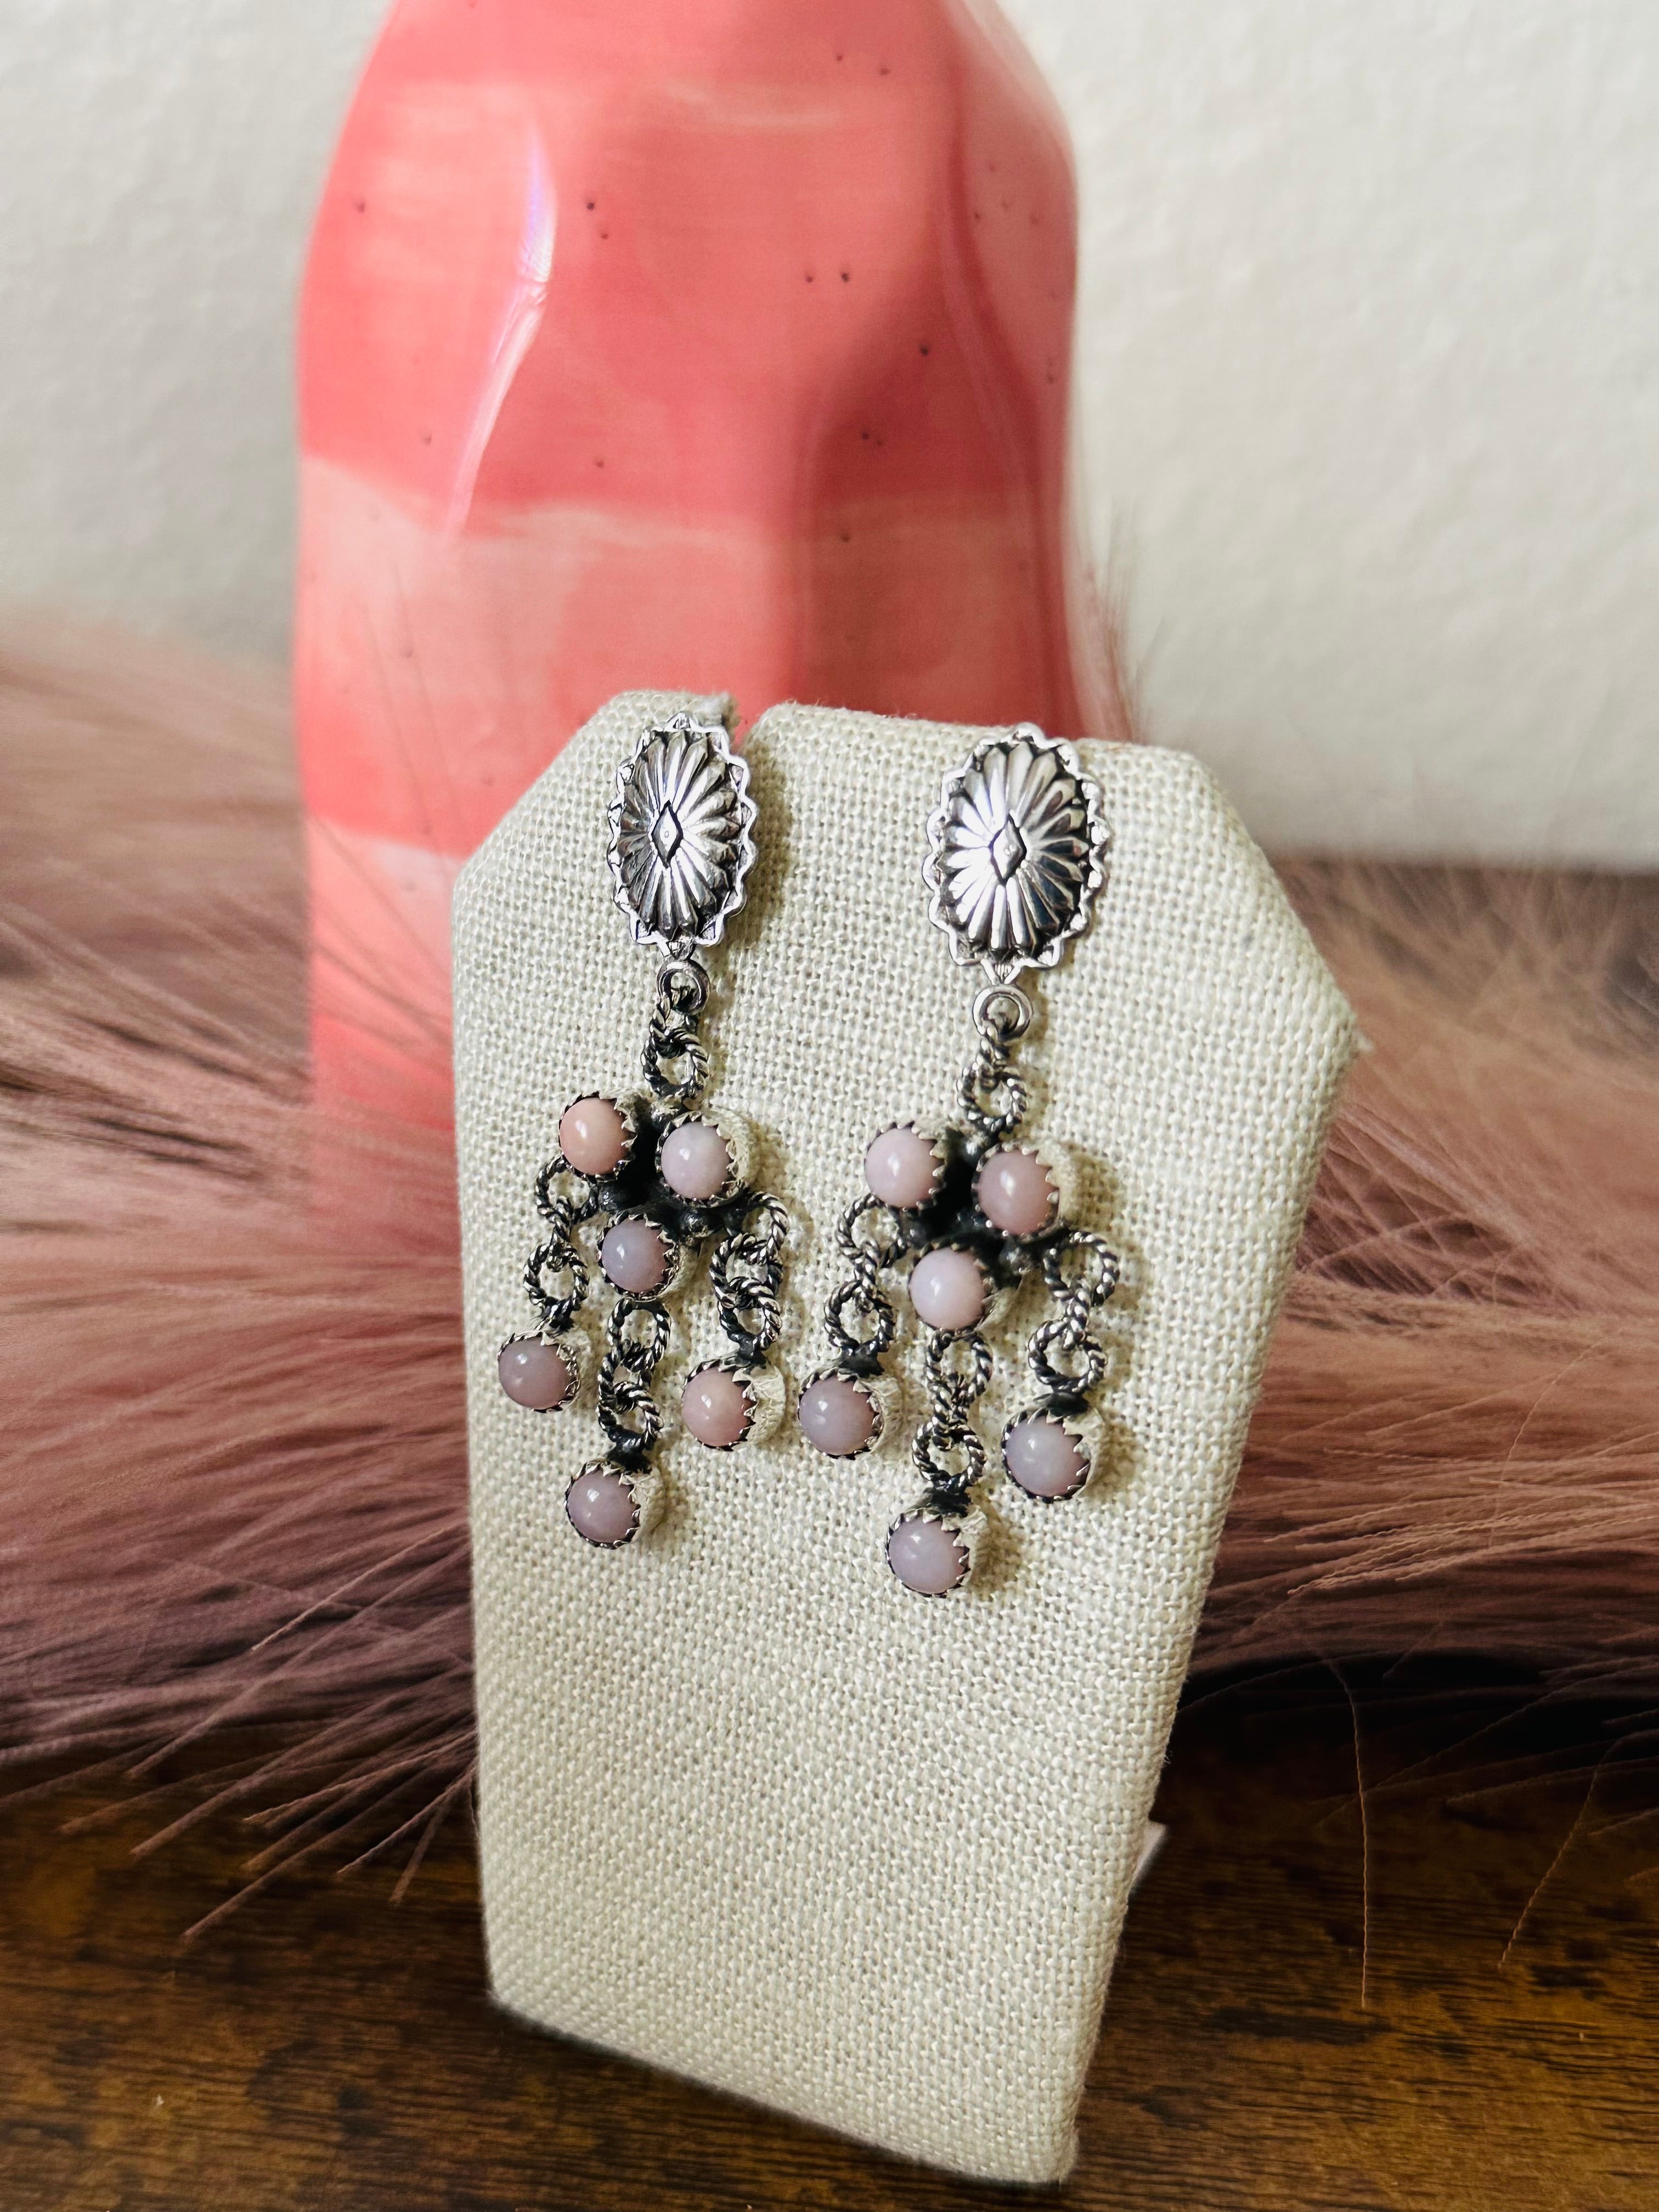 Southwest Handmade Peruvian Pink Opal & Sterling Silver Post Dangle Earrings